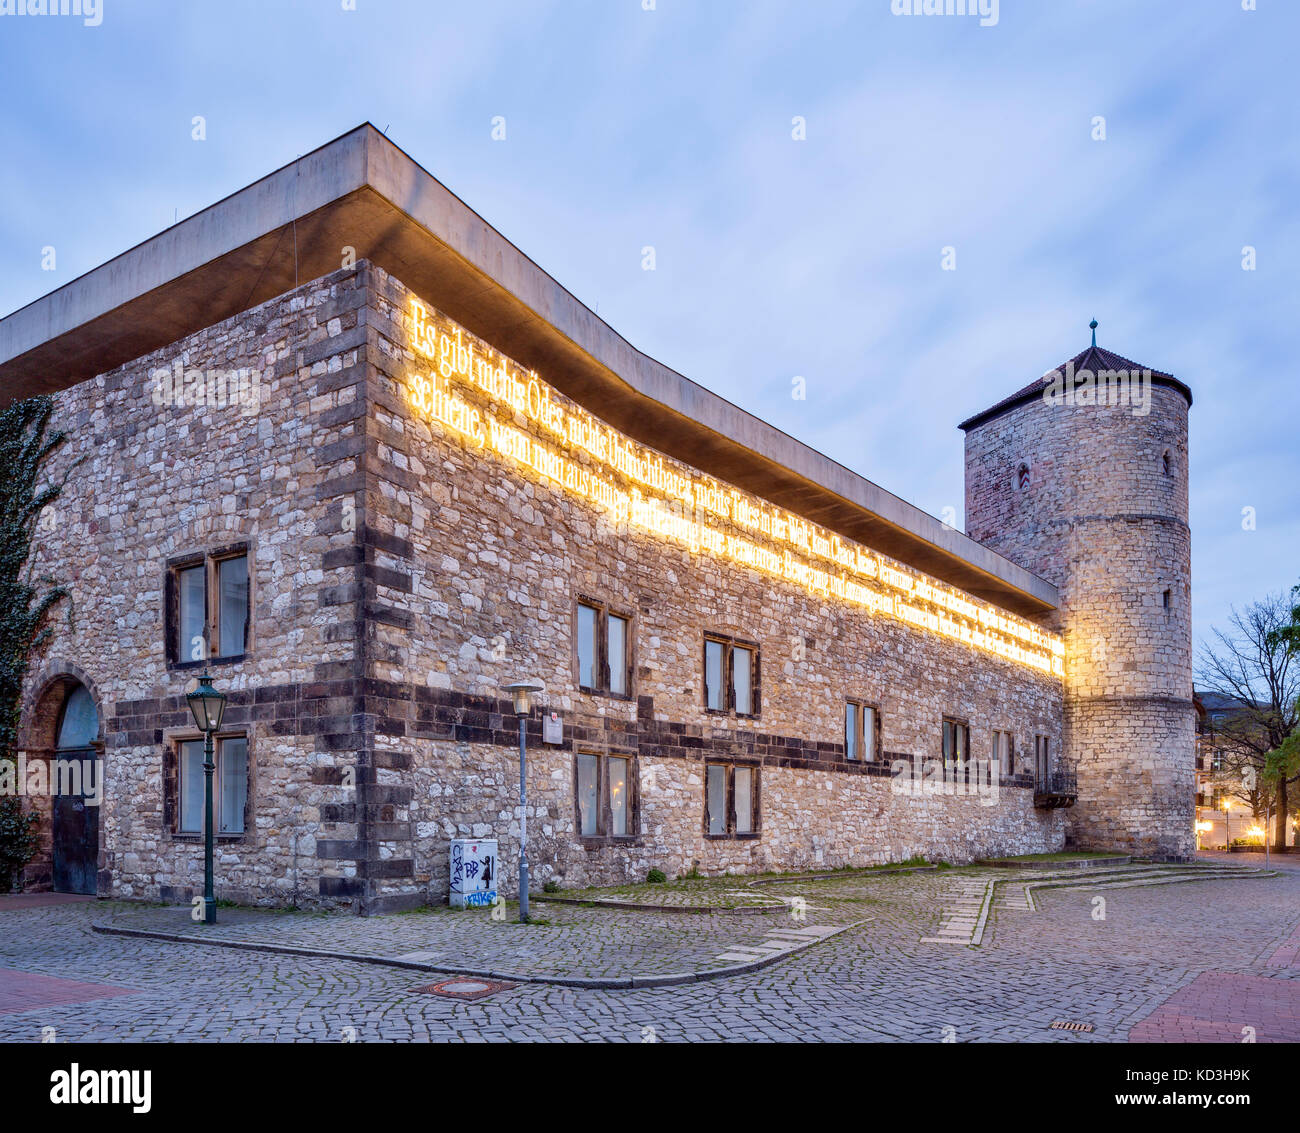 Musée d'histoire culturelle, l'édifice du musée, avec une partie de la ville médiévale et commencer à tour, Hanovre, Basse-Saxe, Allemagne Banque D'Images